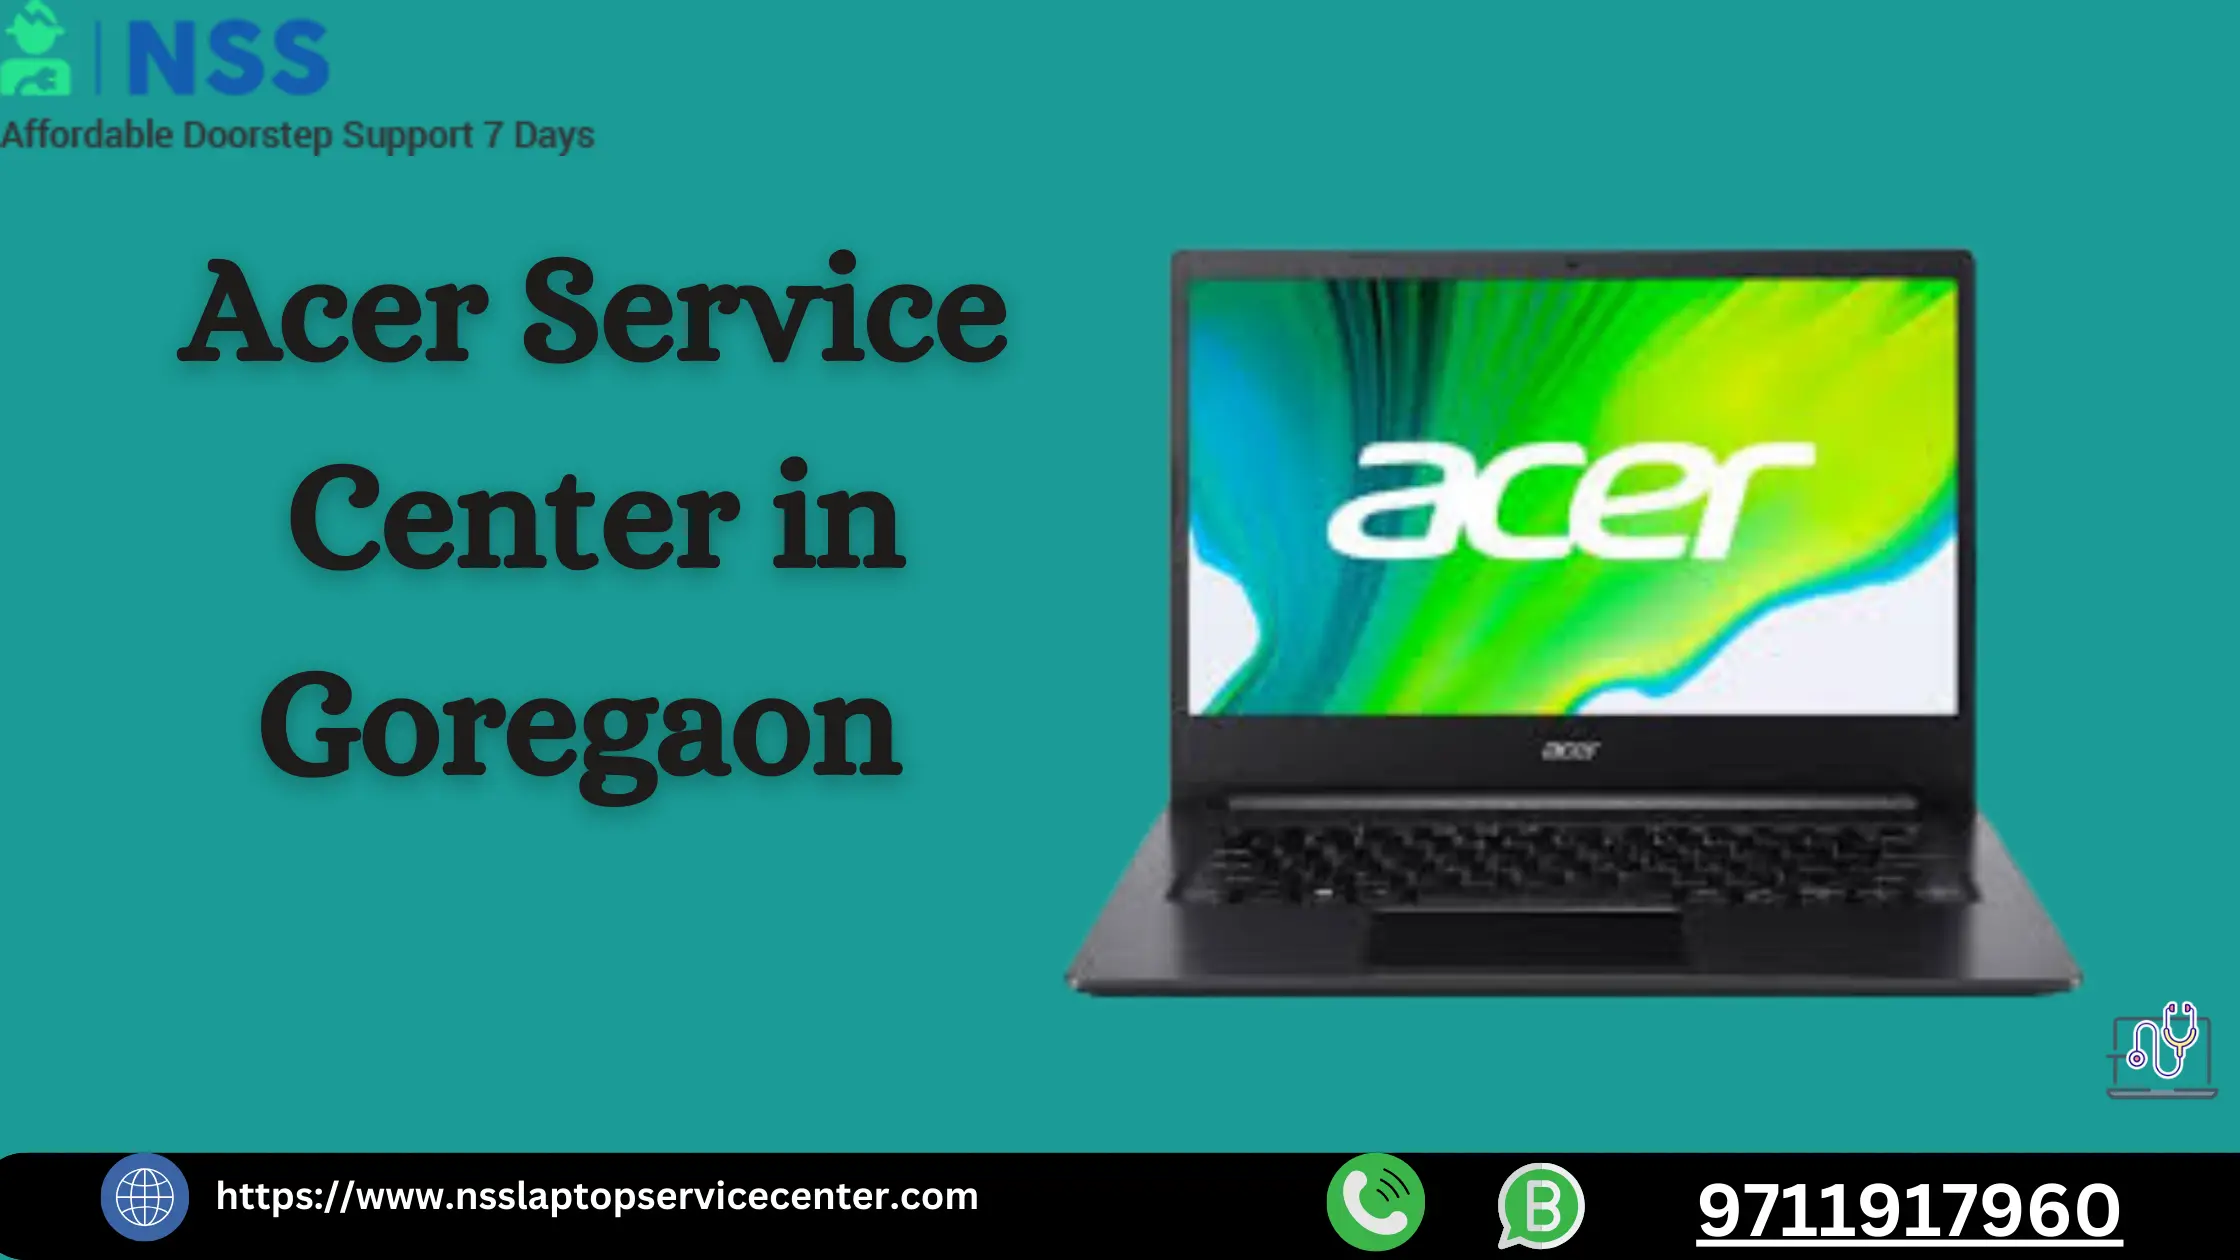 Acer Service Center in Goregaon Near Mumbai